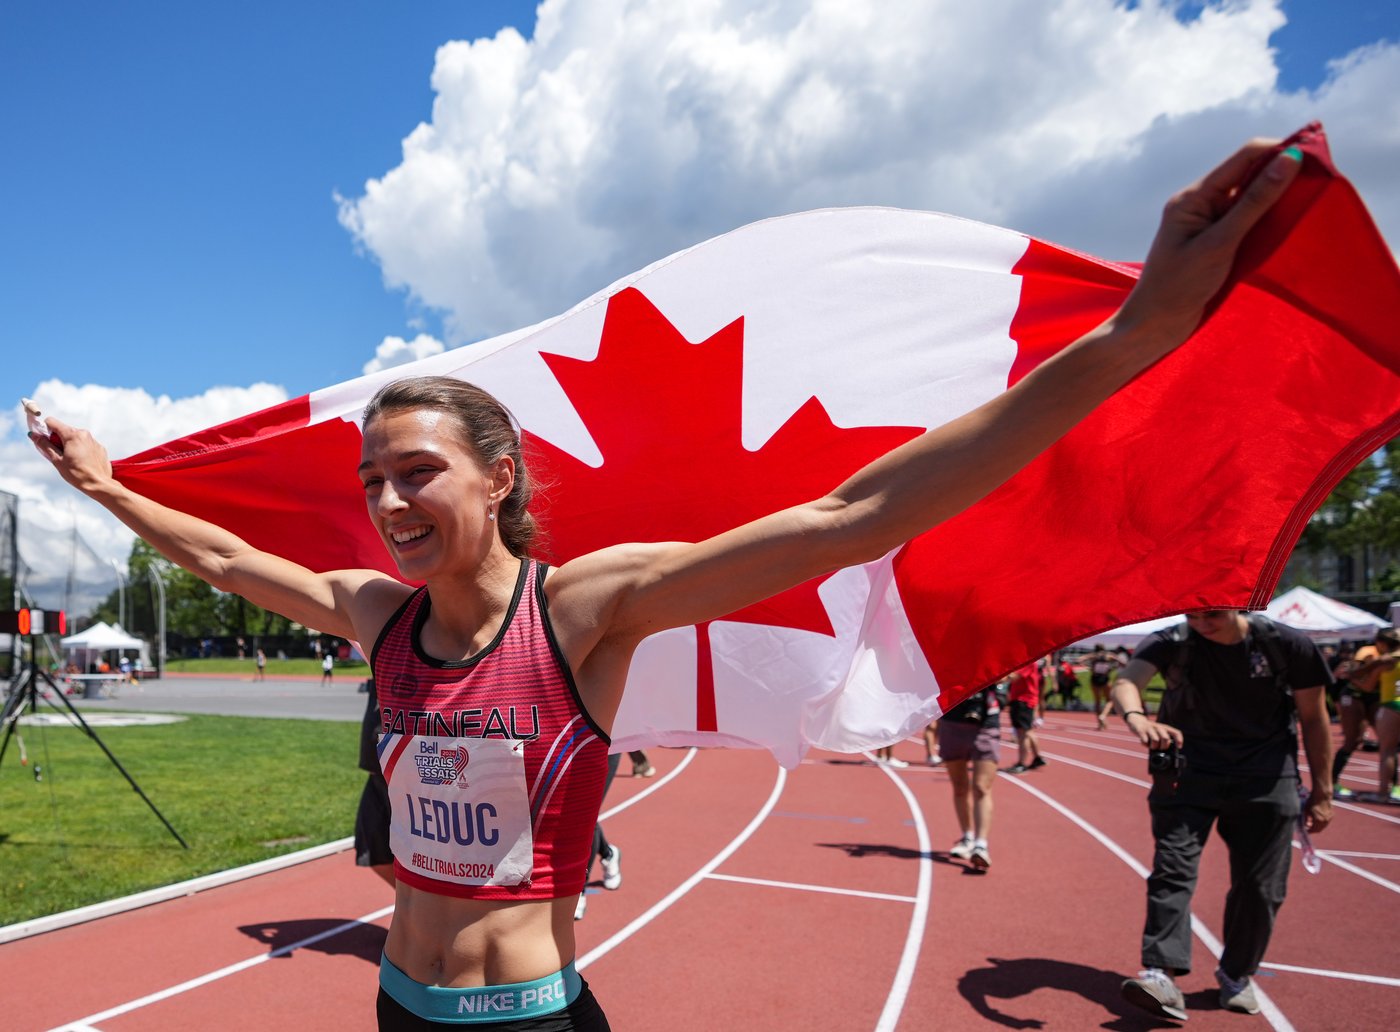 La Reine du stade: Audrey Leduc réussit le doublé aux Essais canadiens d’athlétisme